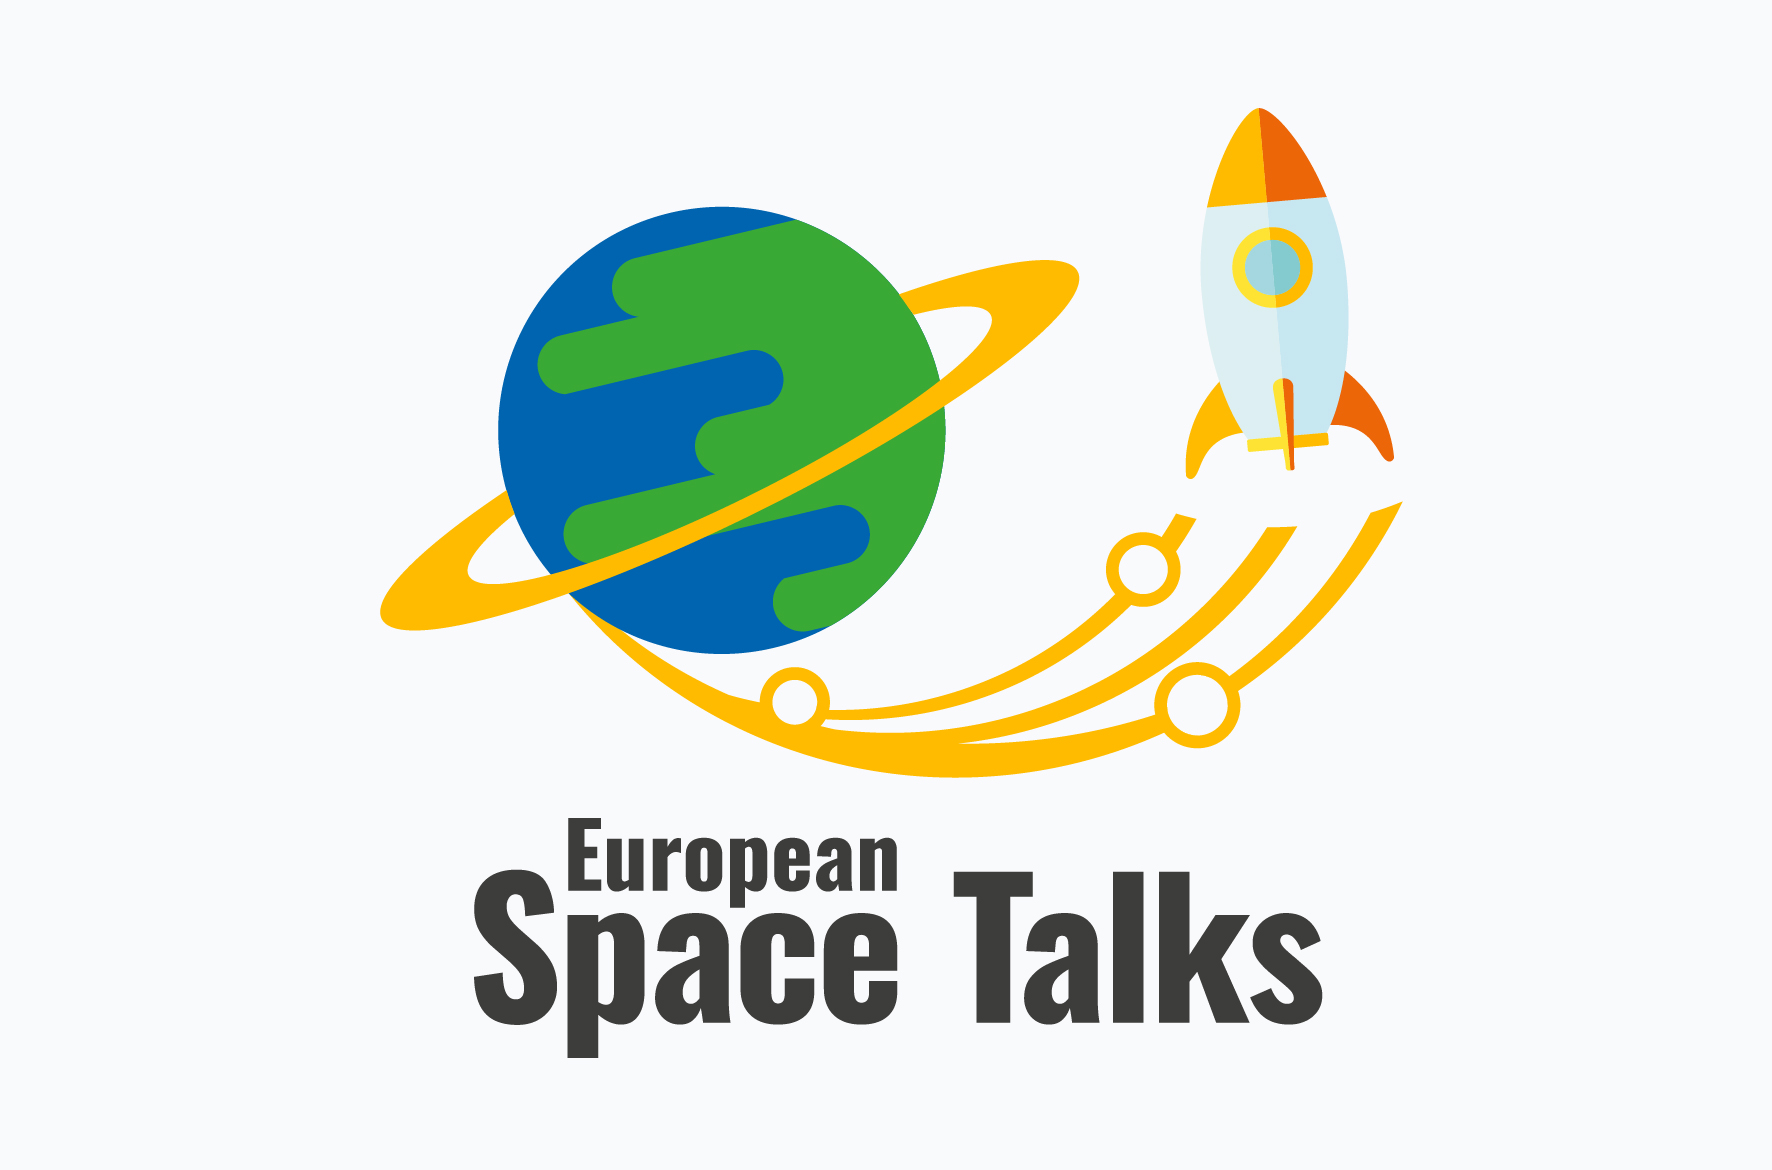 European Space Agency. European Space Agency location. Fan talks logo. EUROAVIA. Fan talks